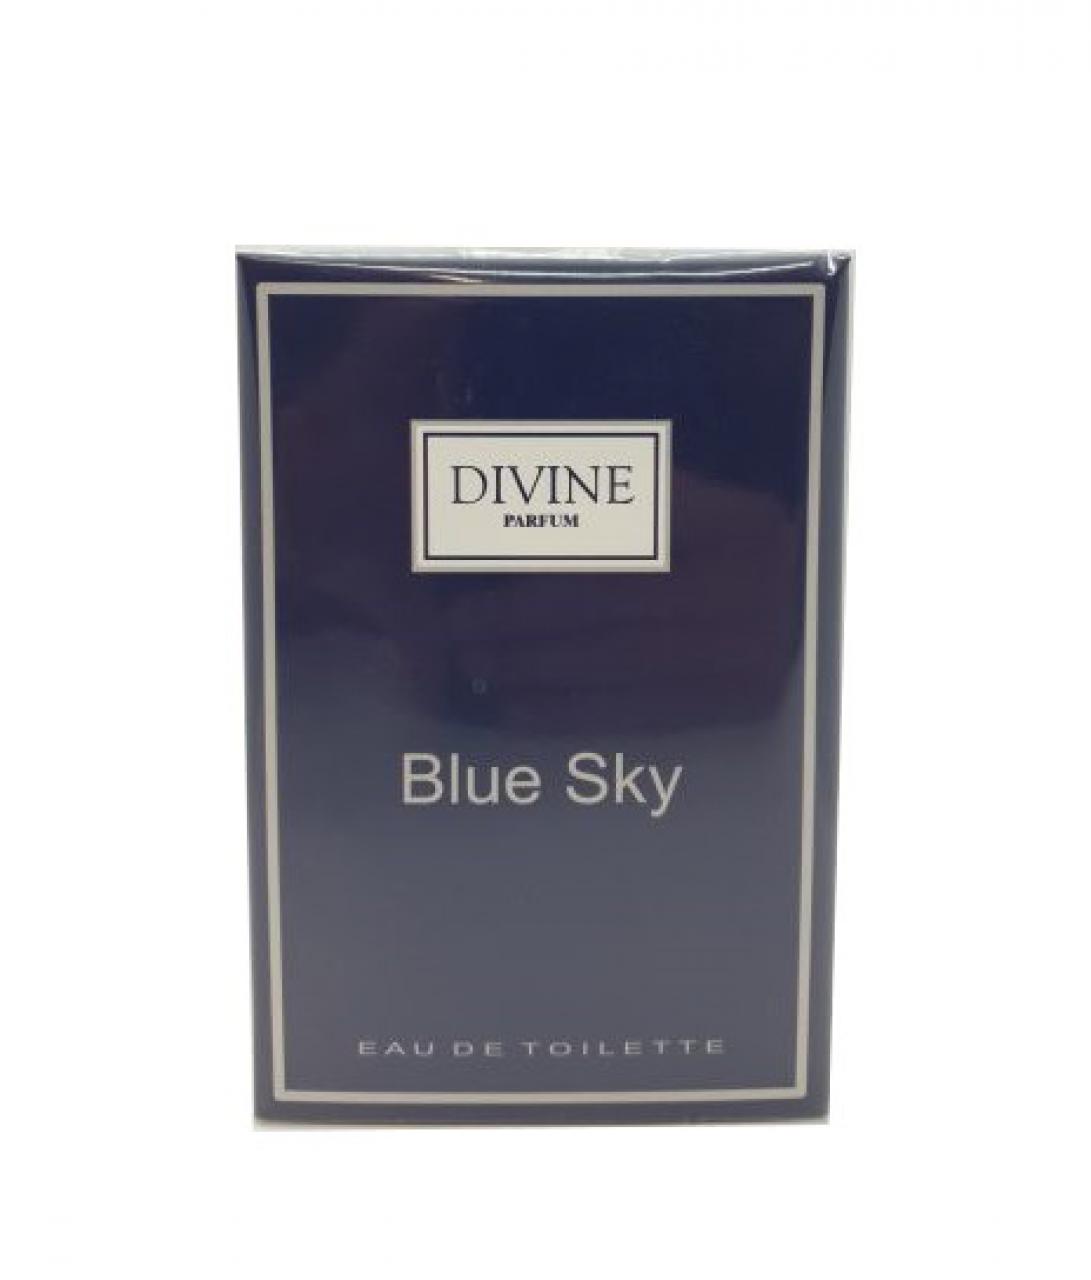 DIVINE PARFUM – BLUE SKY